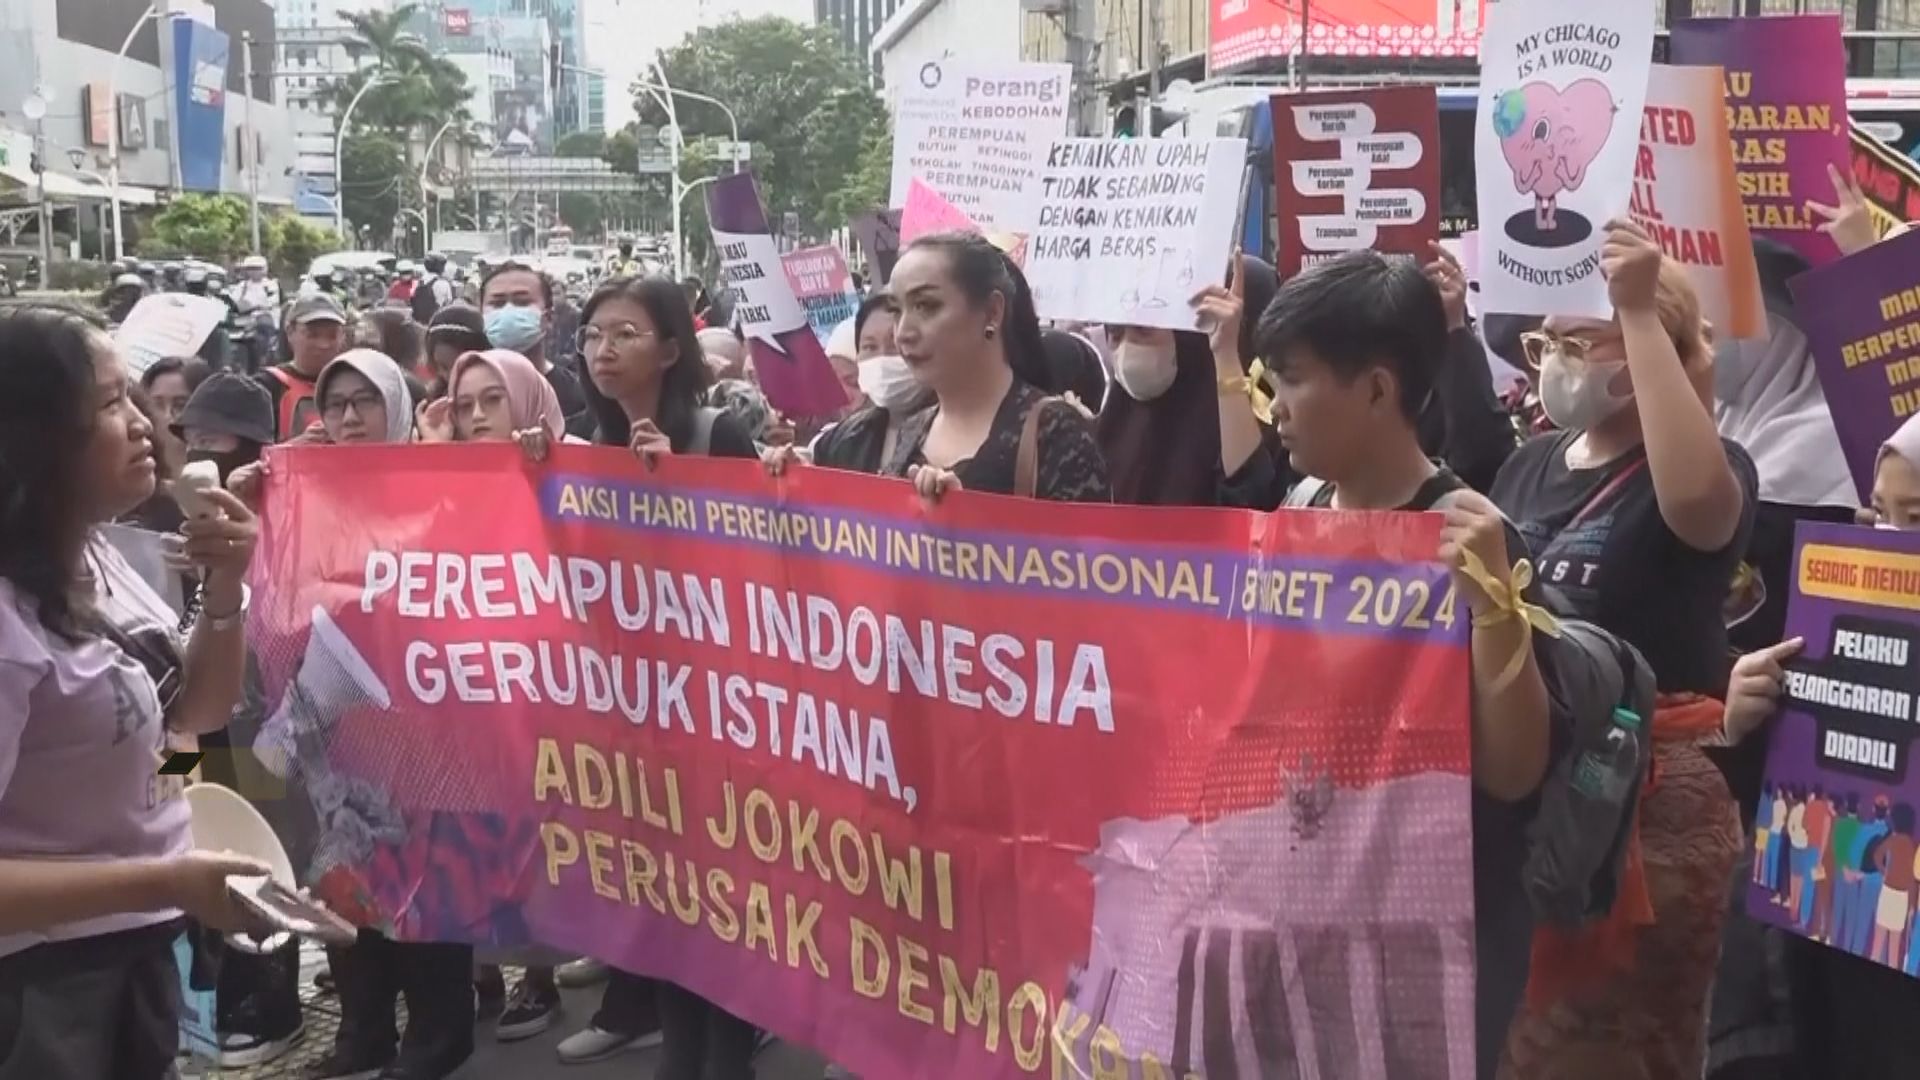 國際婦女節 全球多地團體遊行爭取保障婦女權益